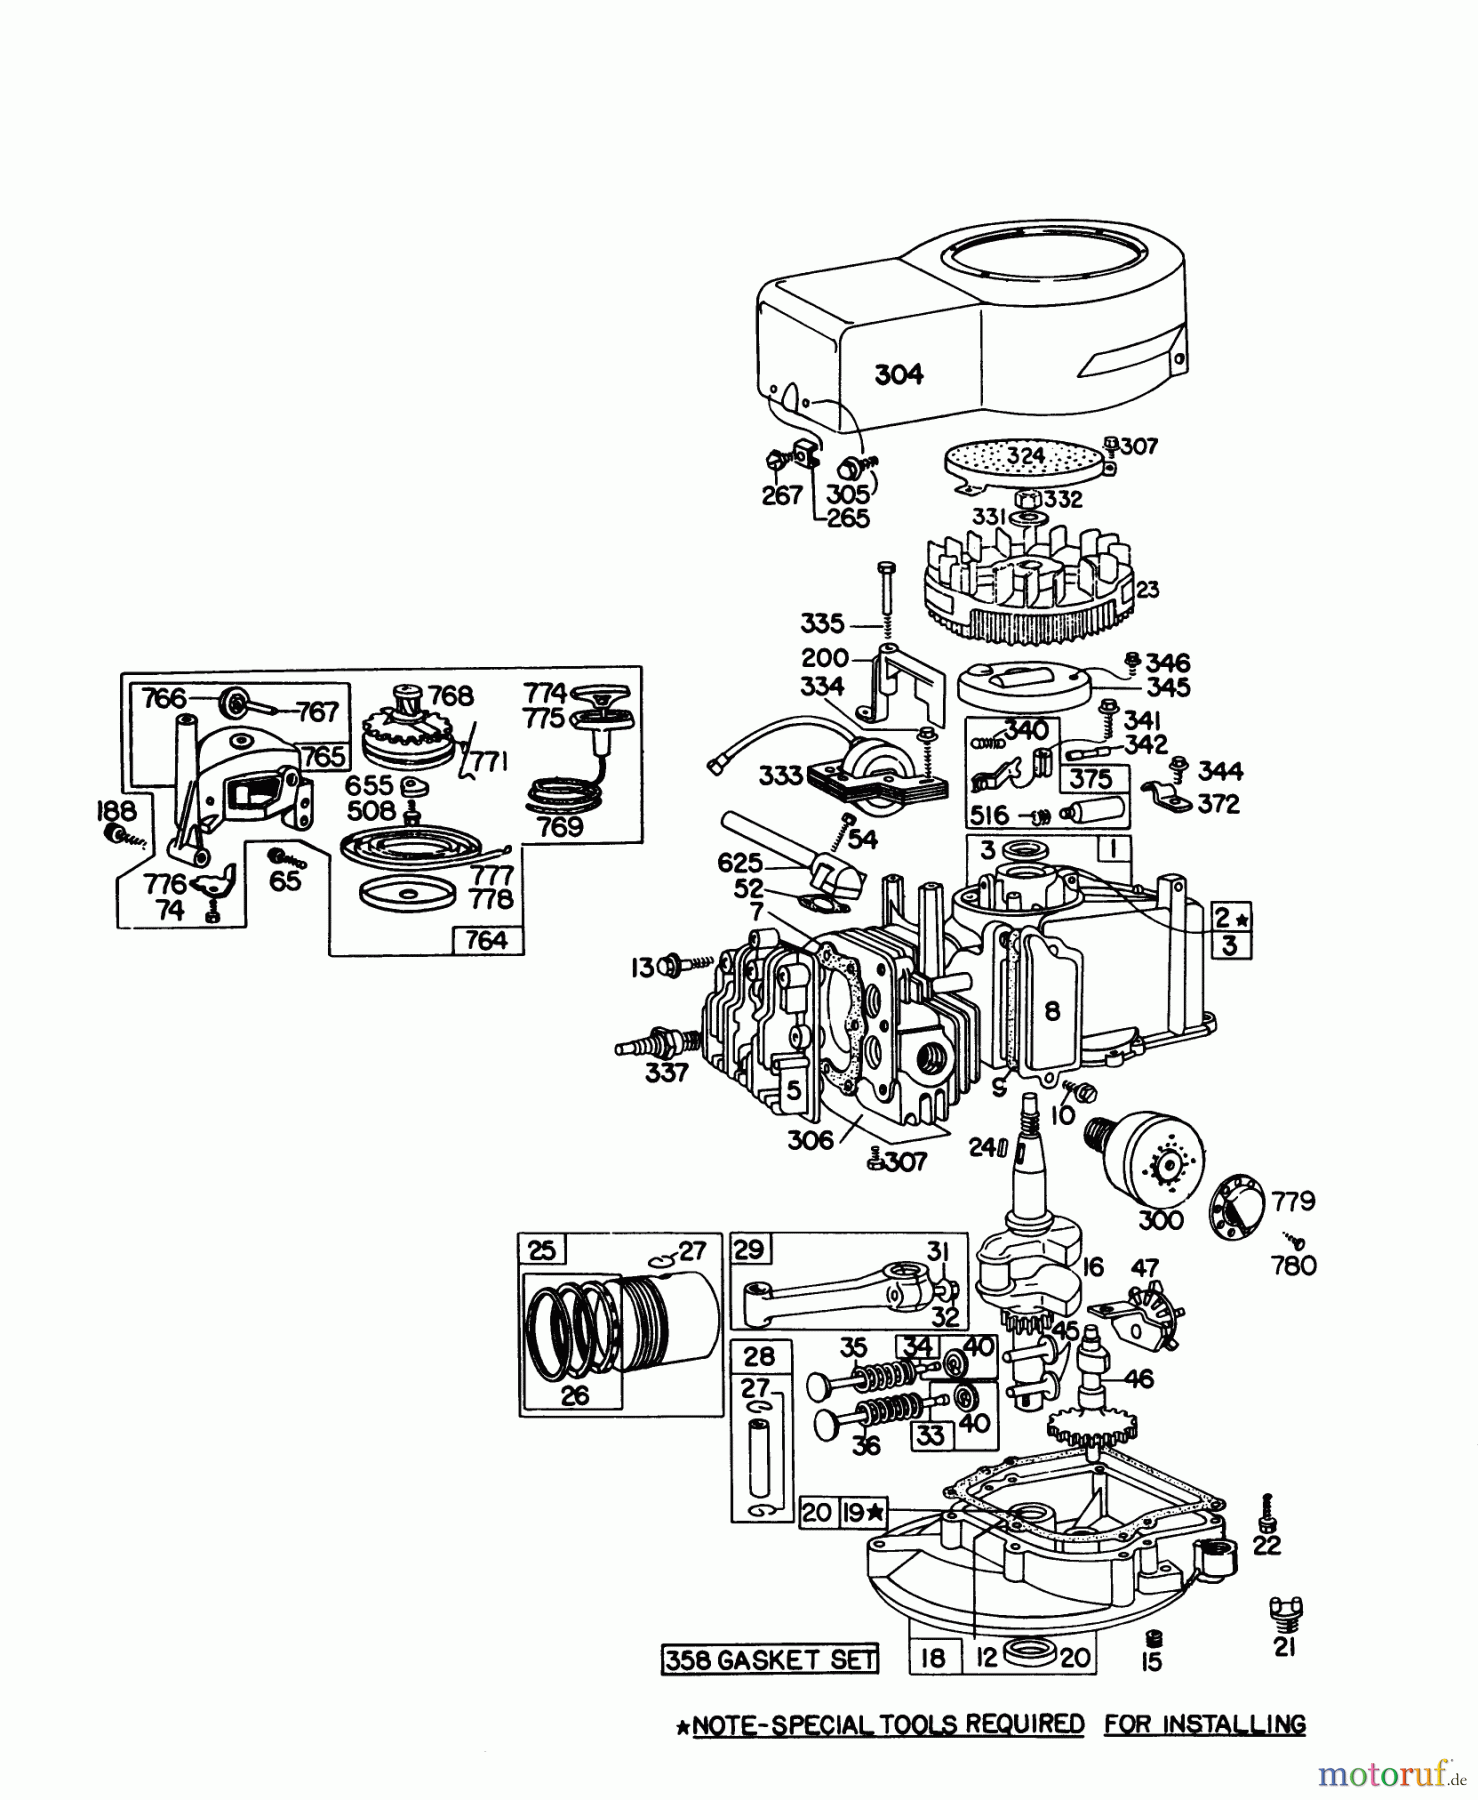  Toro Neu Mowers, Walk-Behind Seite 1 16067 - Toro Whirlwind II Lawnmower, 1978 (8000001-8999999) ENGINE BRIGGS & STRATTON MODEL 92908-1842-01 FOR 21